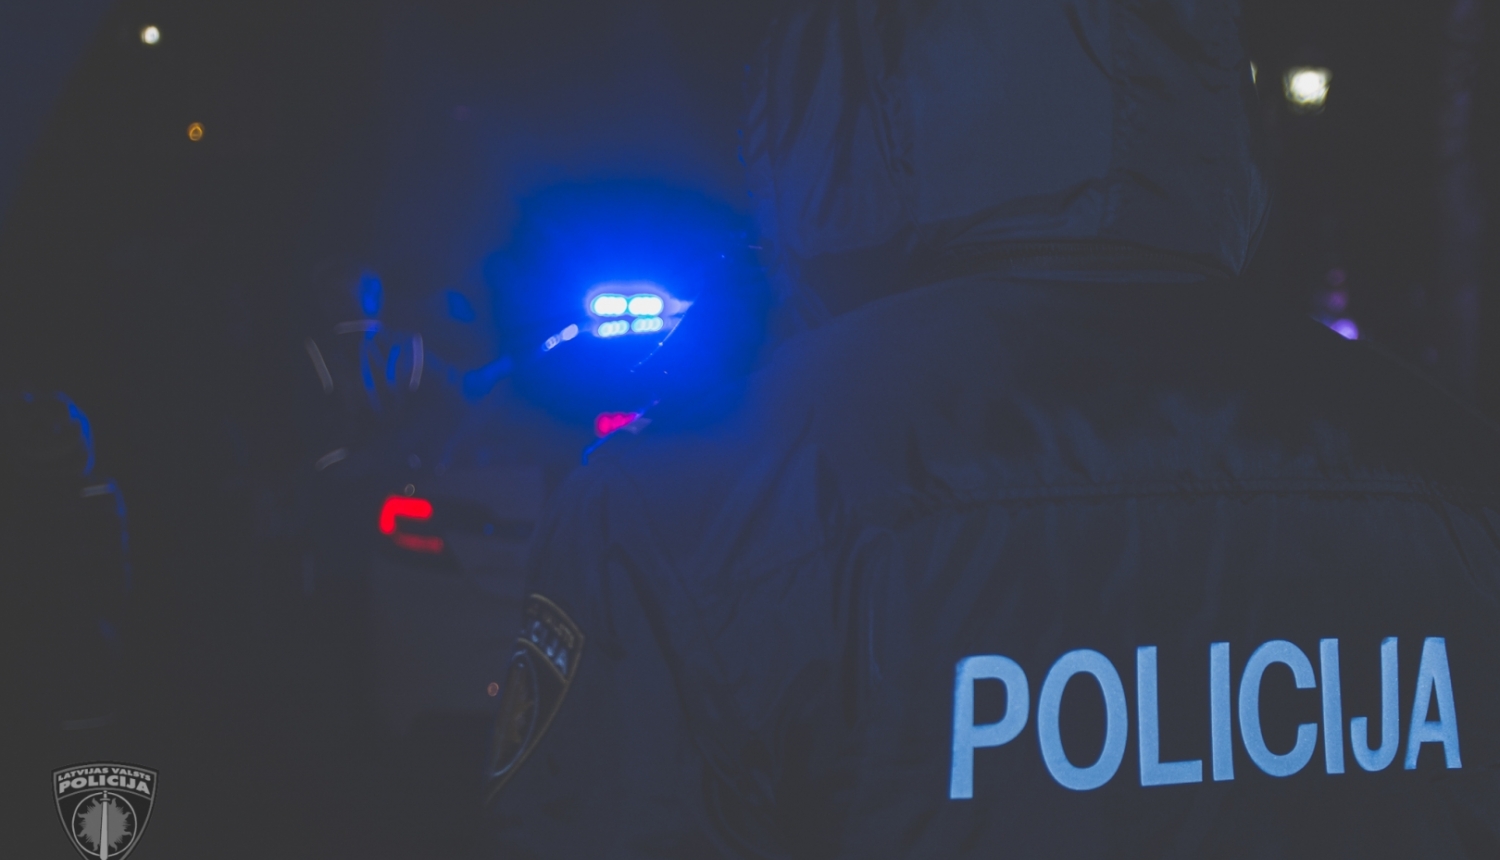 Tumsā redzamas policijas dienesta automašīnas zilā bākuguns un uzraksts "POLICIJA" uz policista dienesta formas mugurpuses